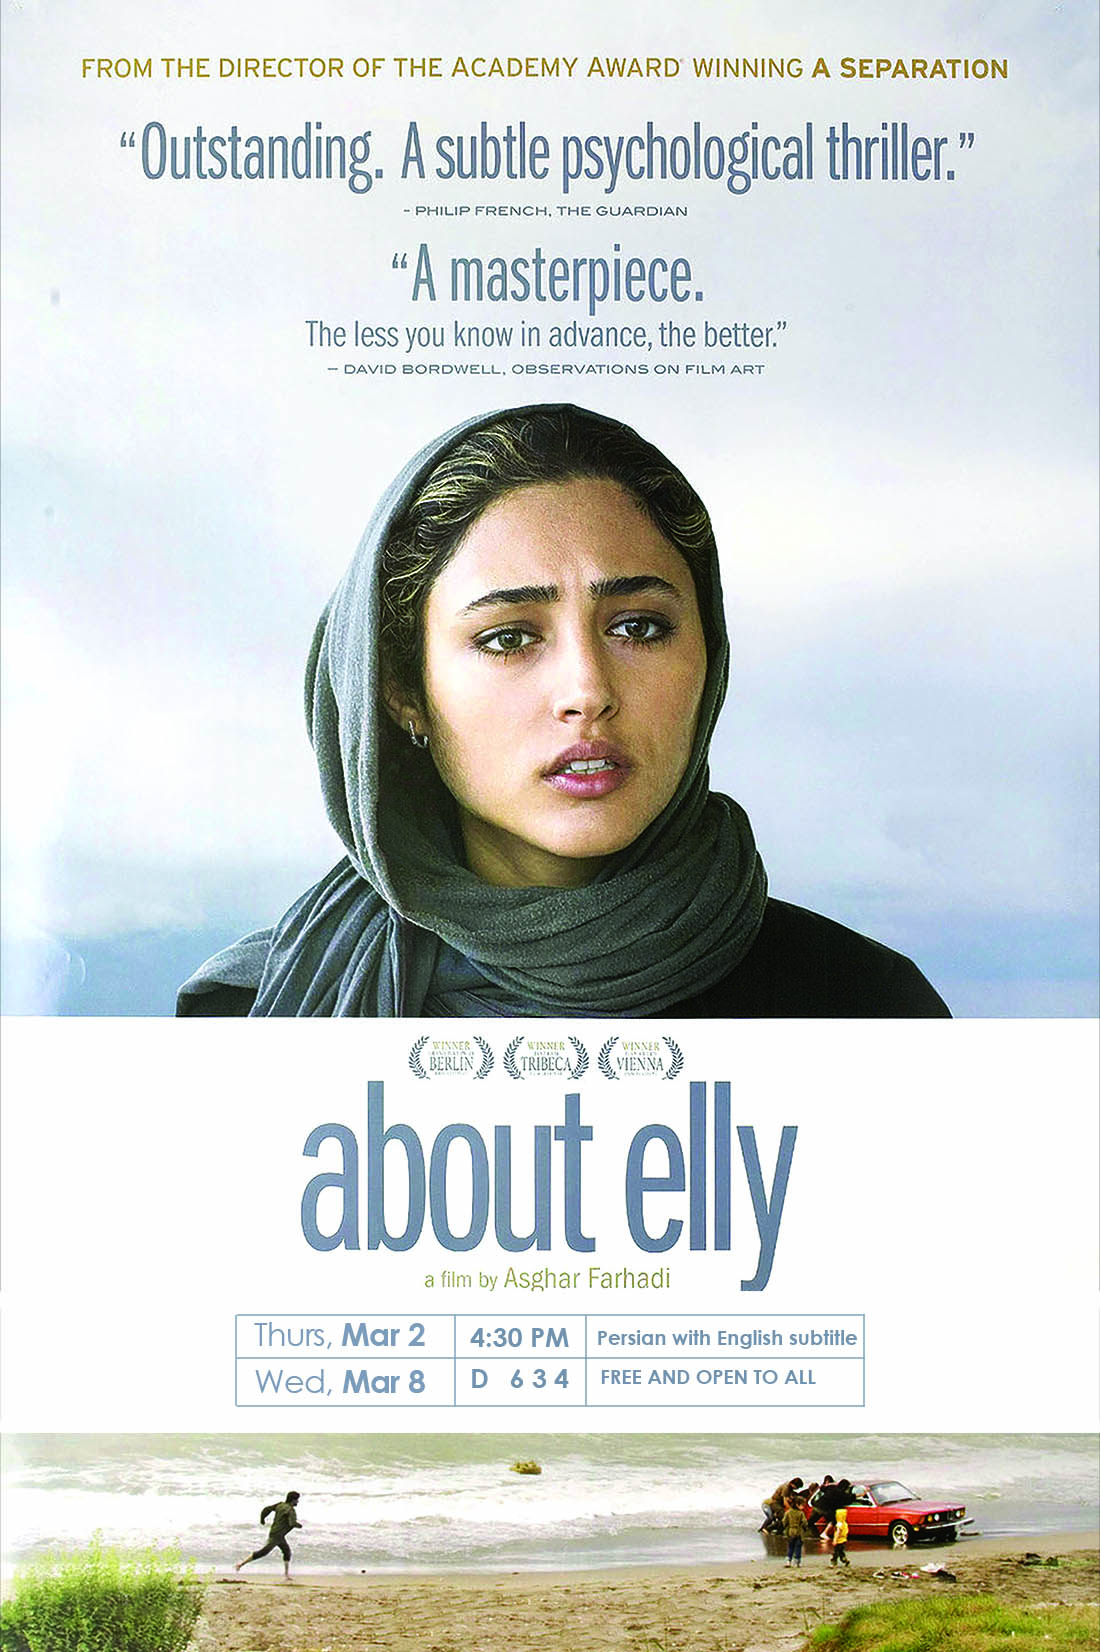 Darbareye Elly (2009) Poster #1